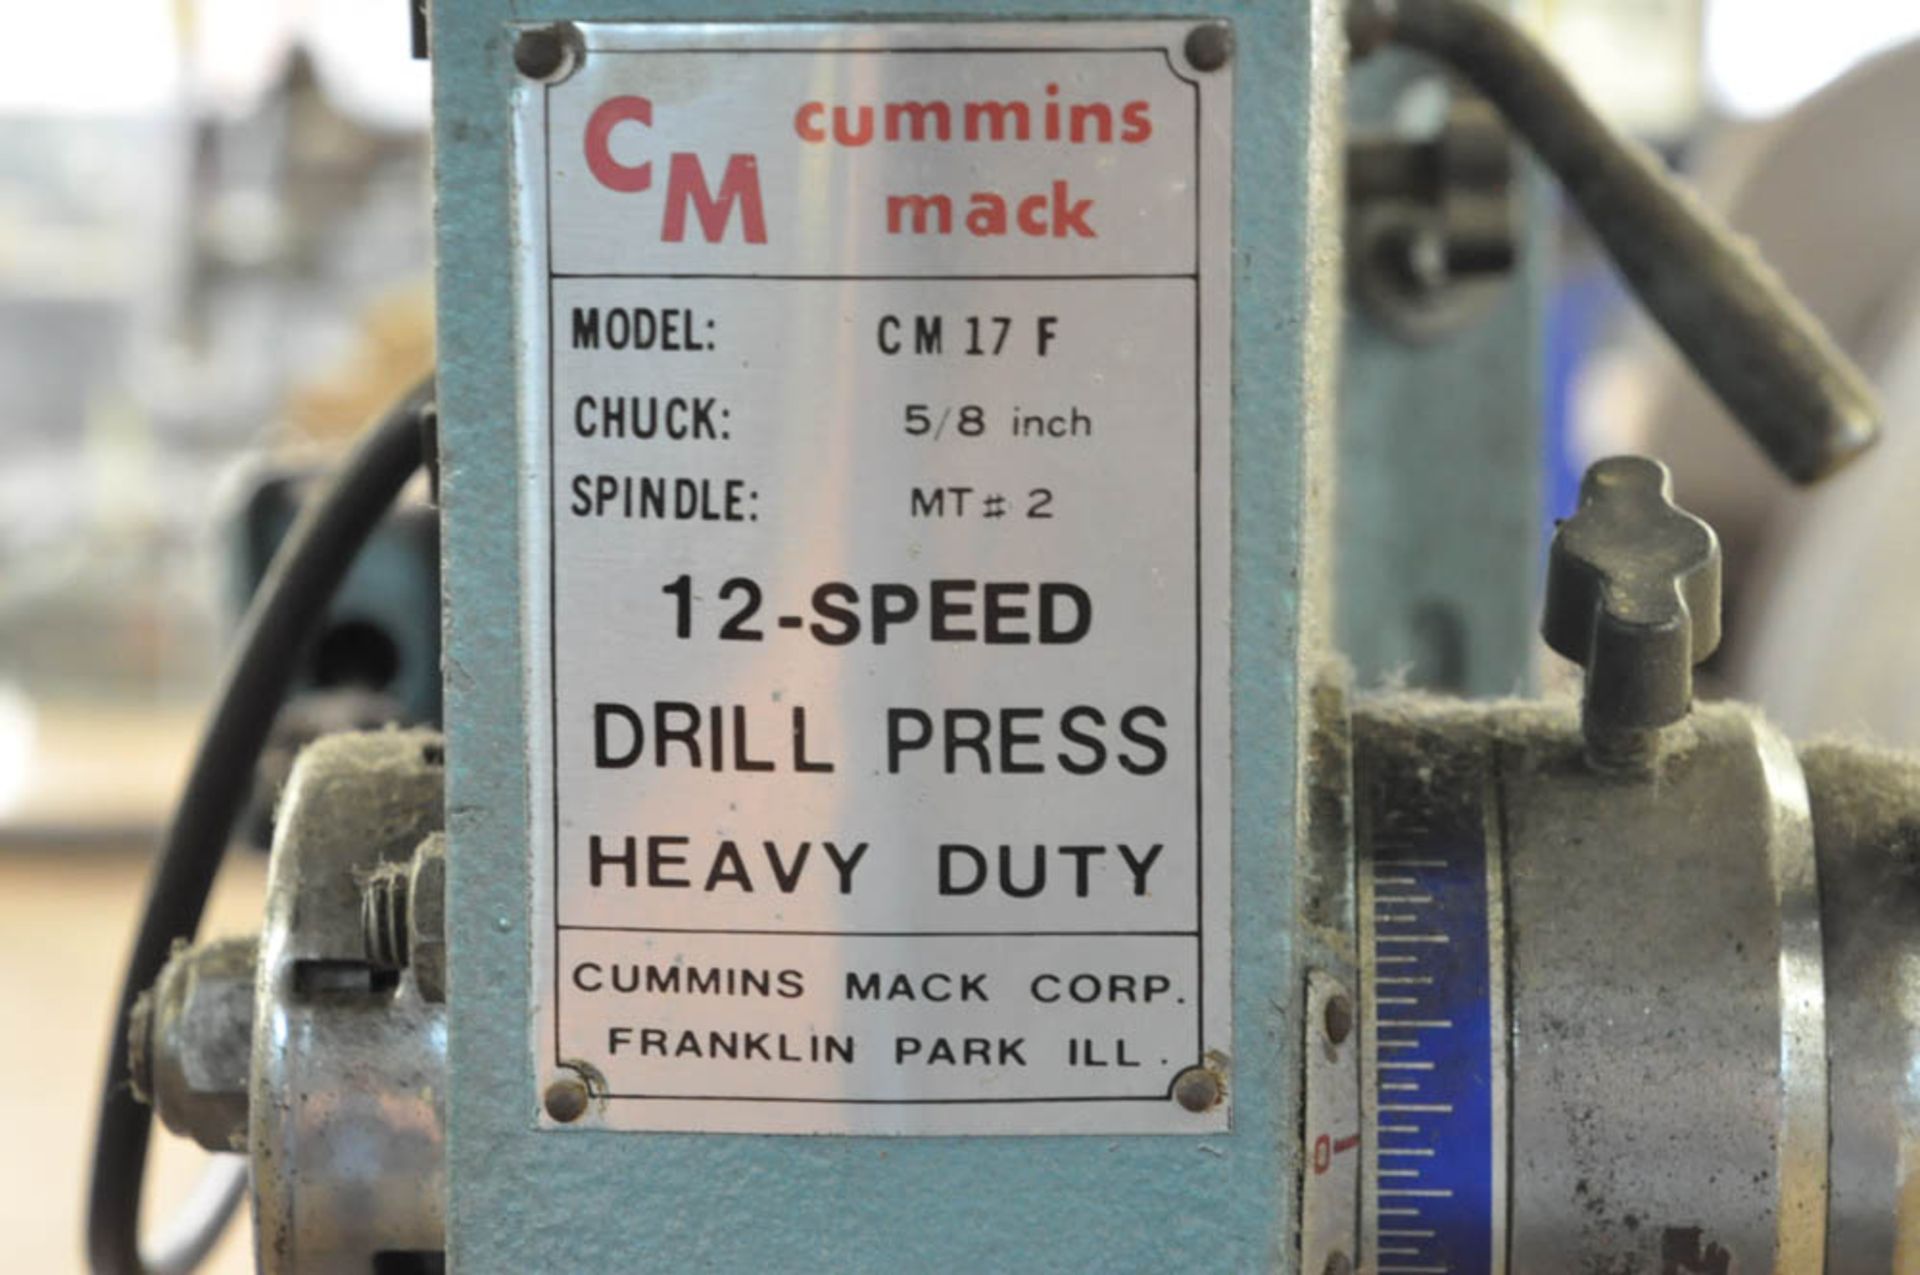 CUMMINS MACK MDL. CM 17 F, 13" FLOOR STANDING DRILL PRESS, S/N:N/A, 5/8" CHUCK, 11 1/2" DIAMETER - Image 3 of 3